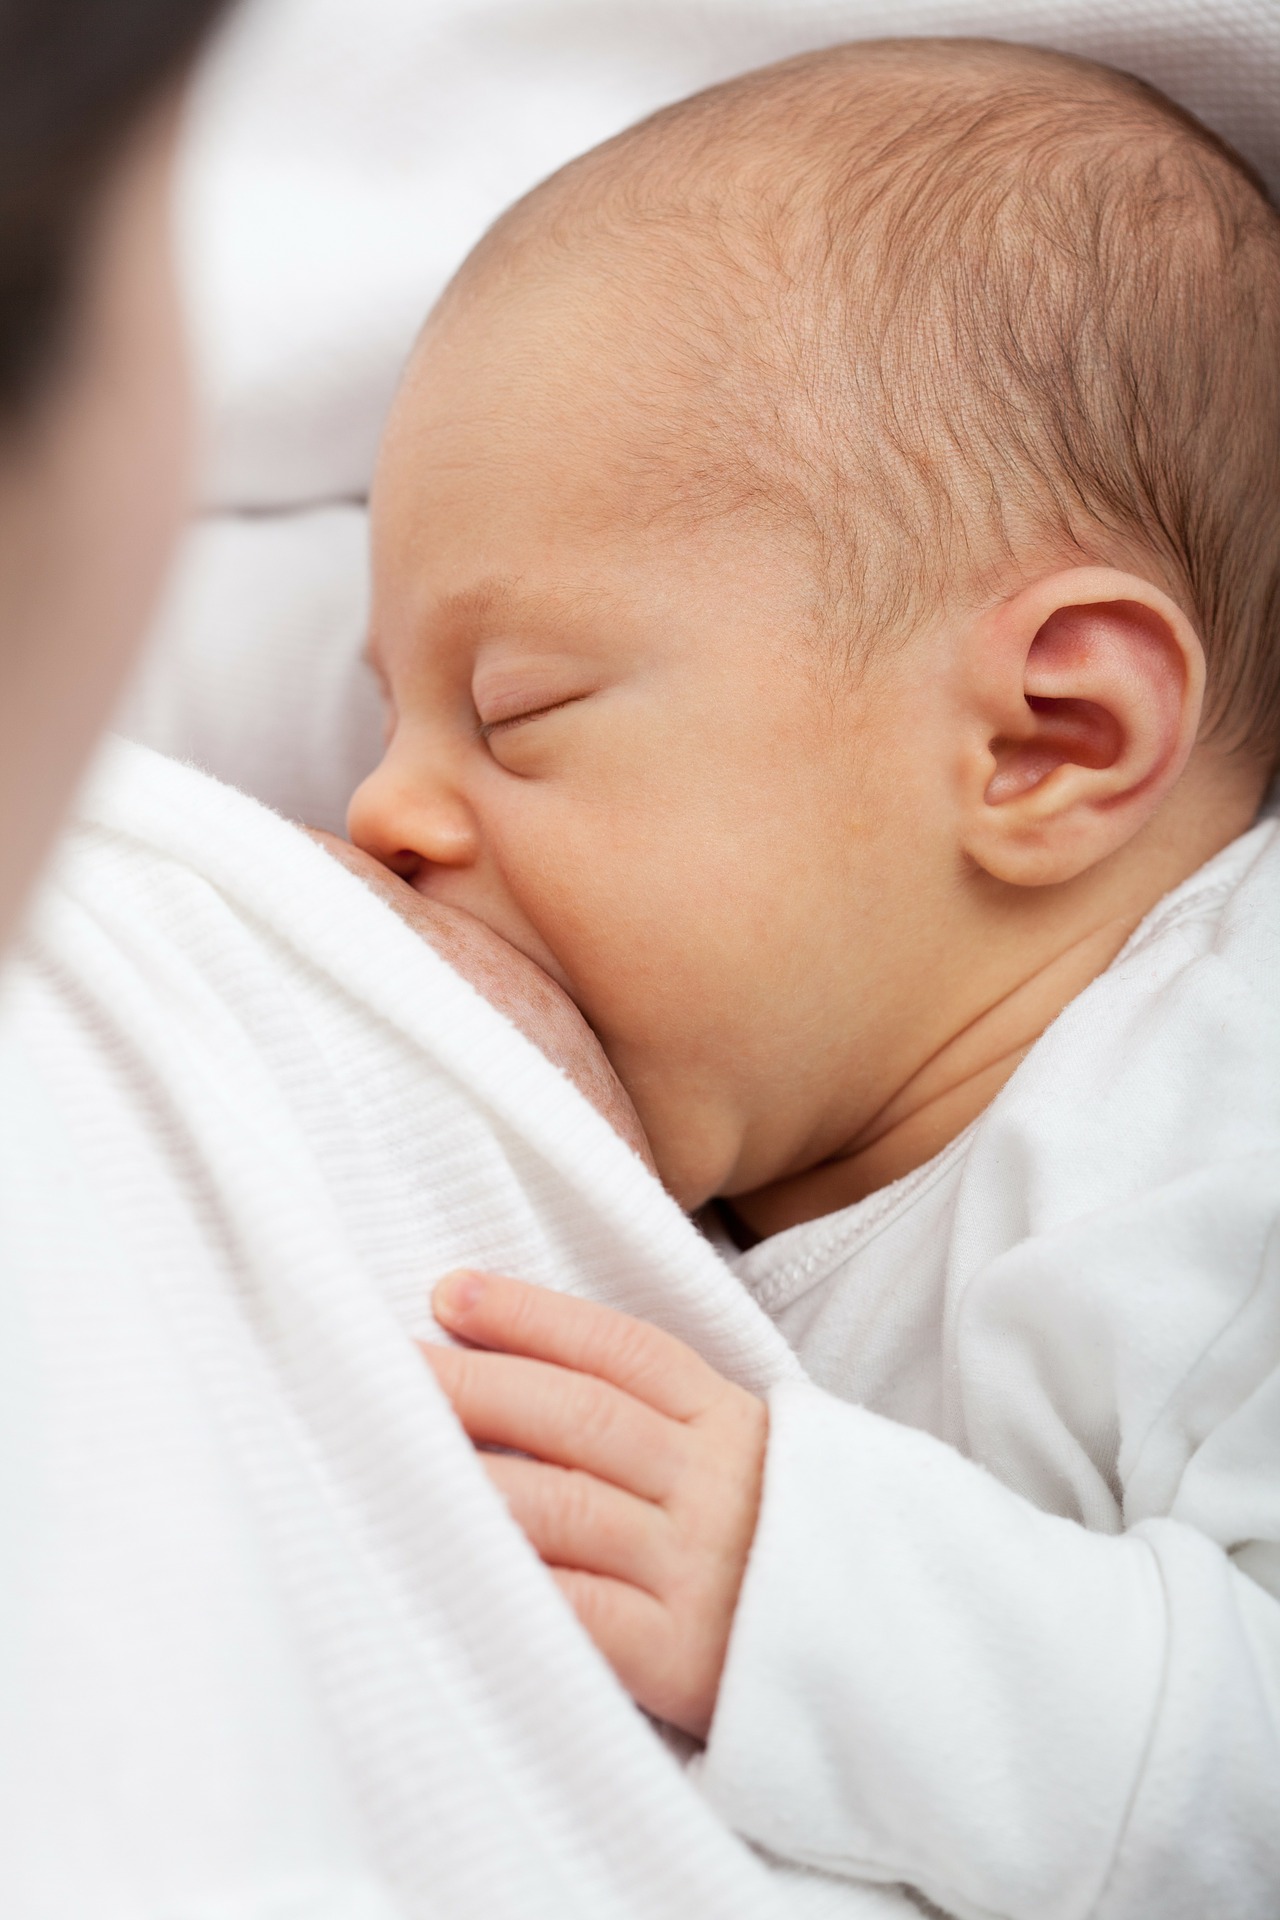 Woman breastfeeding a baby